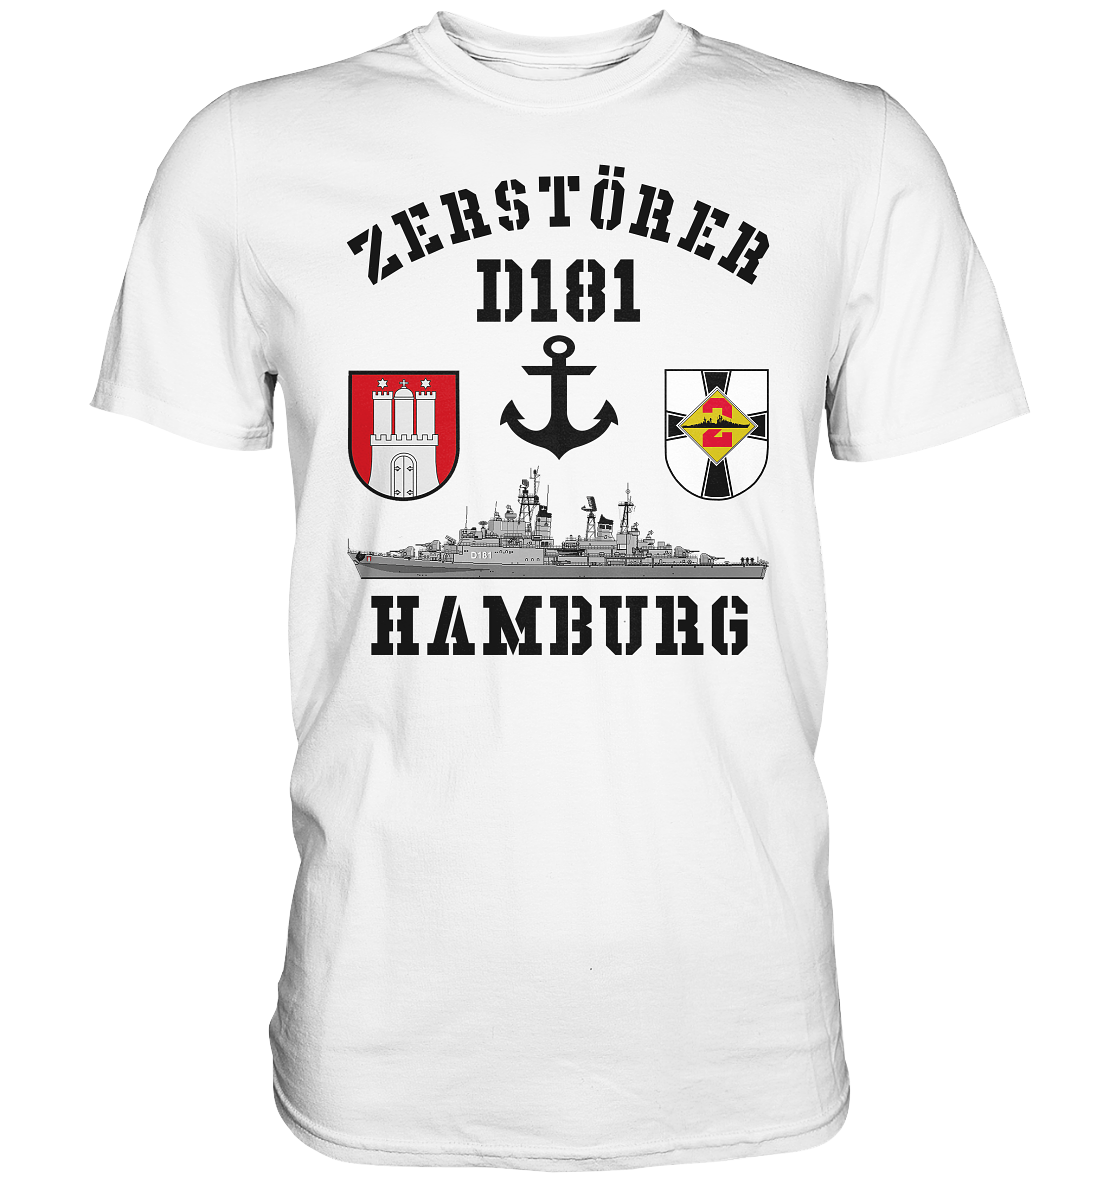 Zerstörer D181 HAMBURG Anker - Premium Shirt